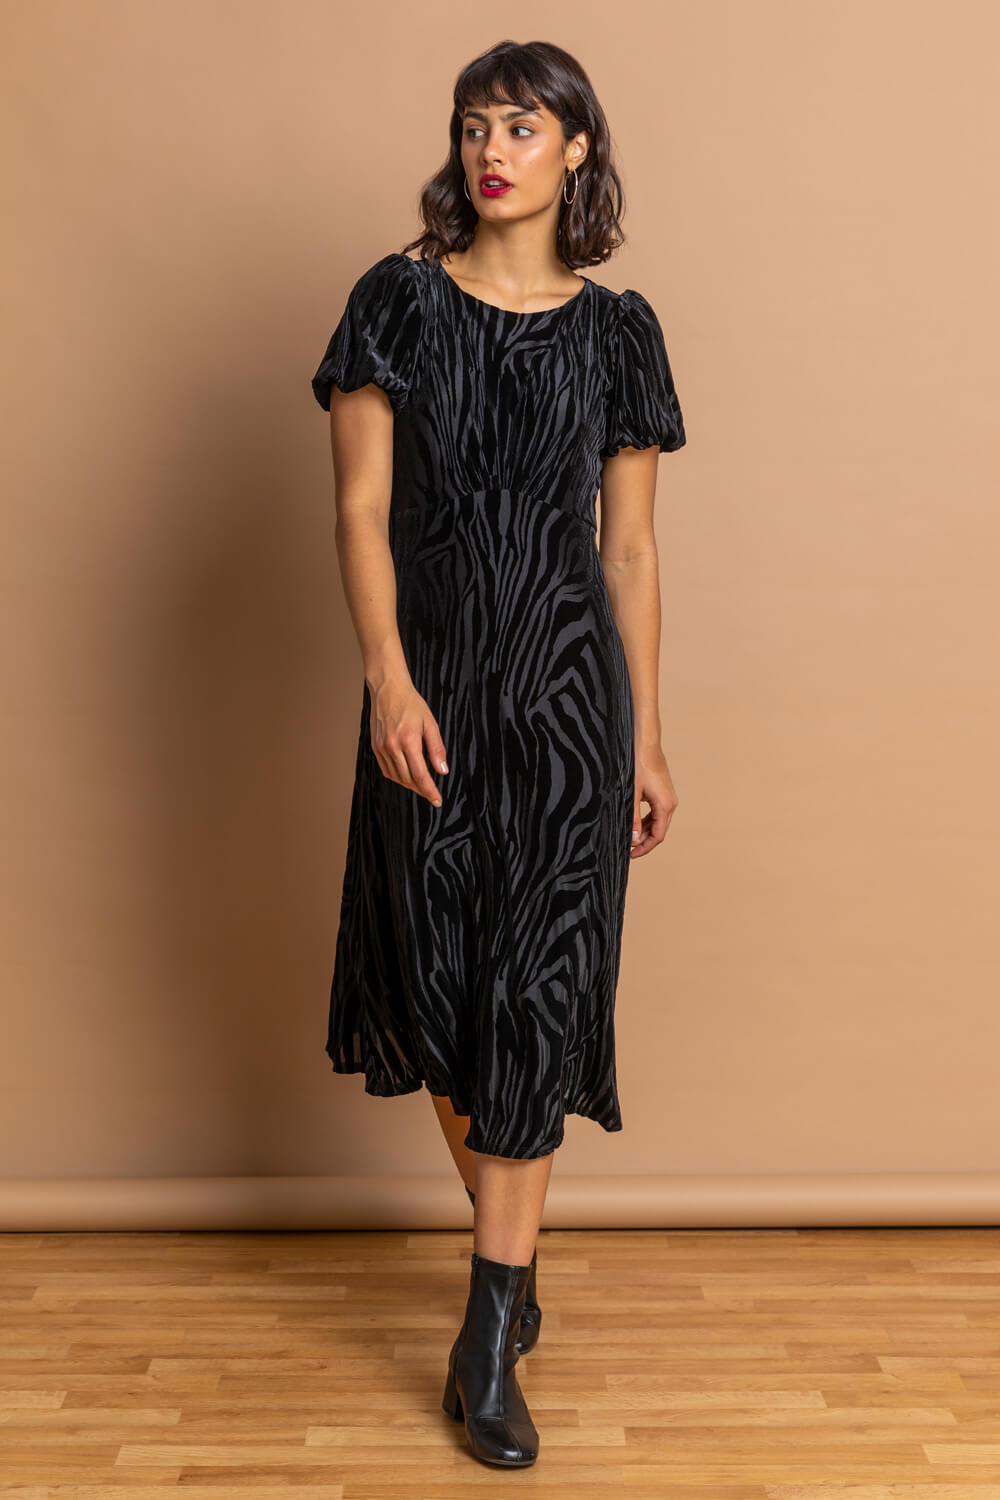 Black Animal Print Burnout Velvet Dress, Image 5 of 5